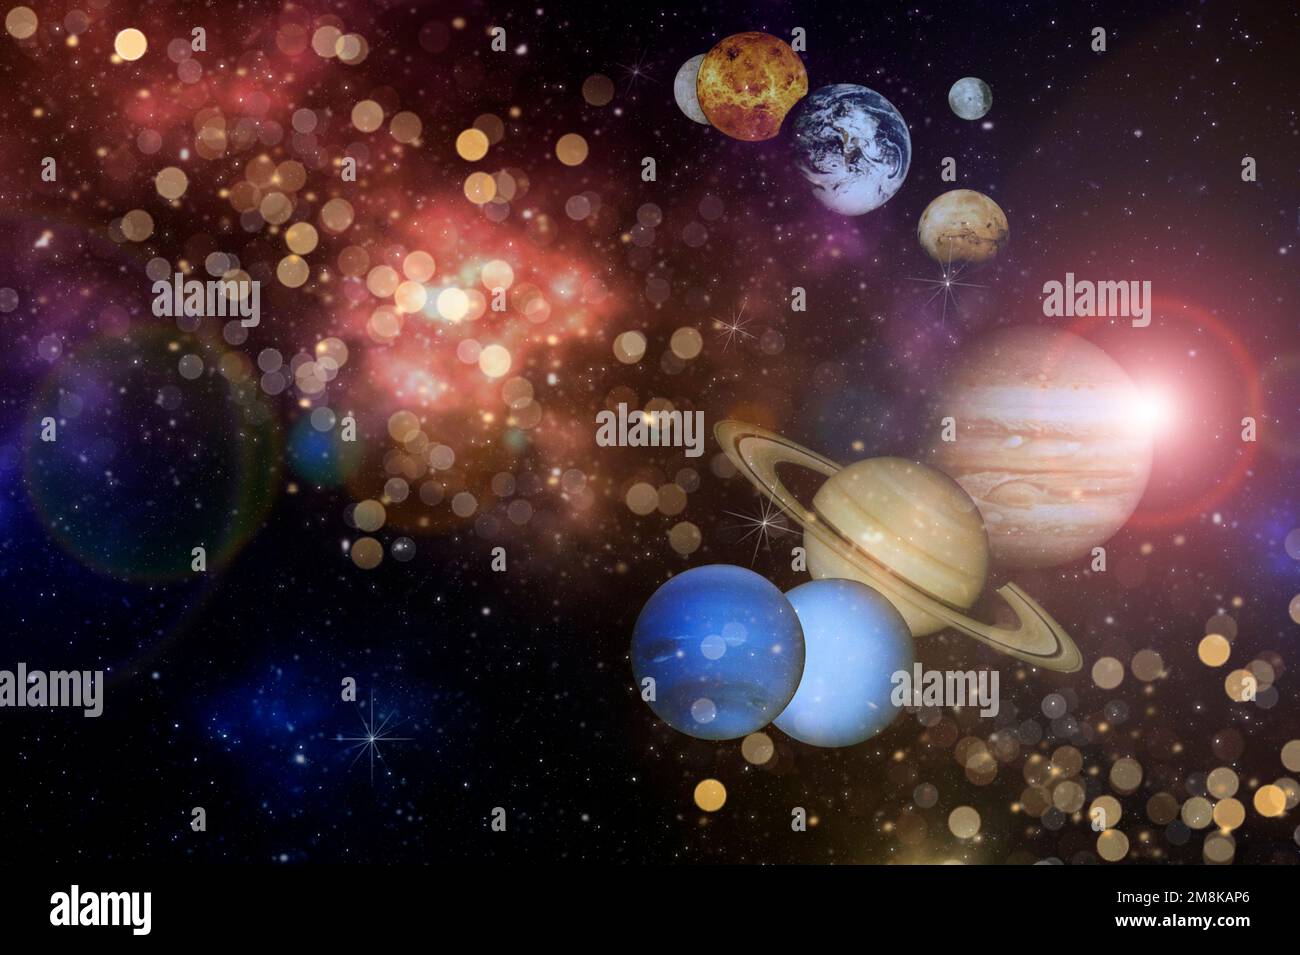 Planeten in der Zeile Solar System in der bunten starry Universe mit Copy space-Elemente dieses Bild von der NASA eingerichtet Stockfoto